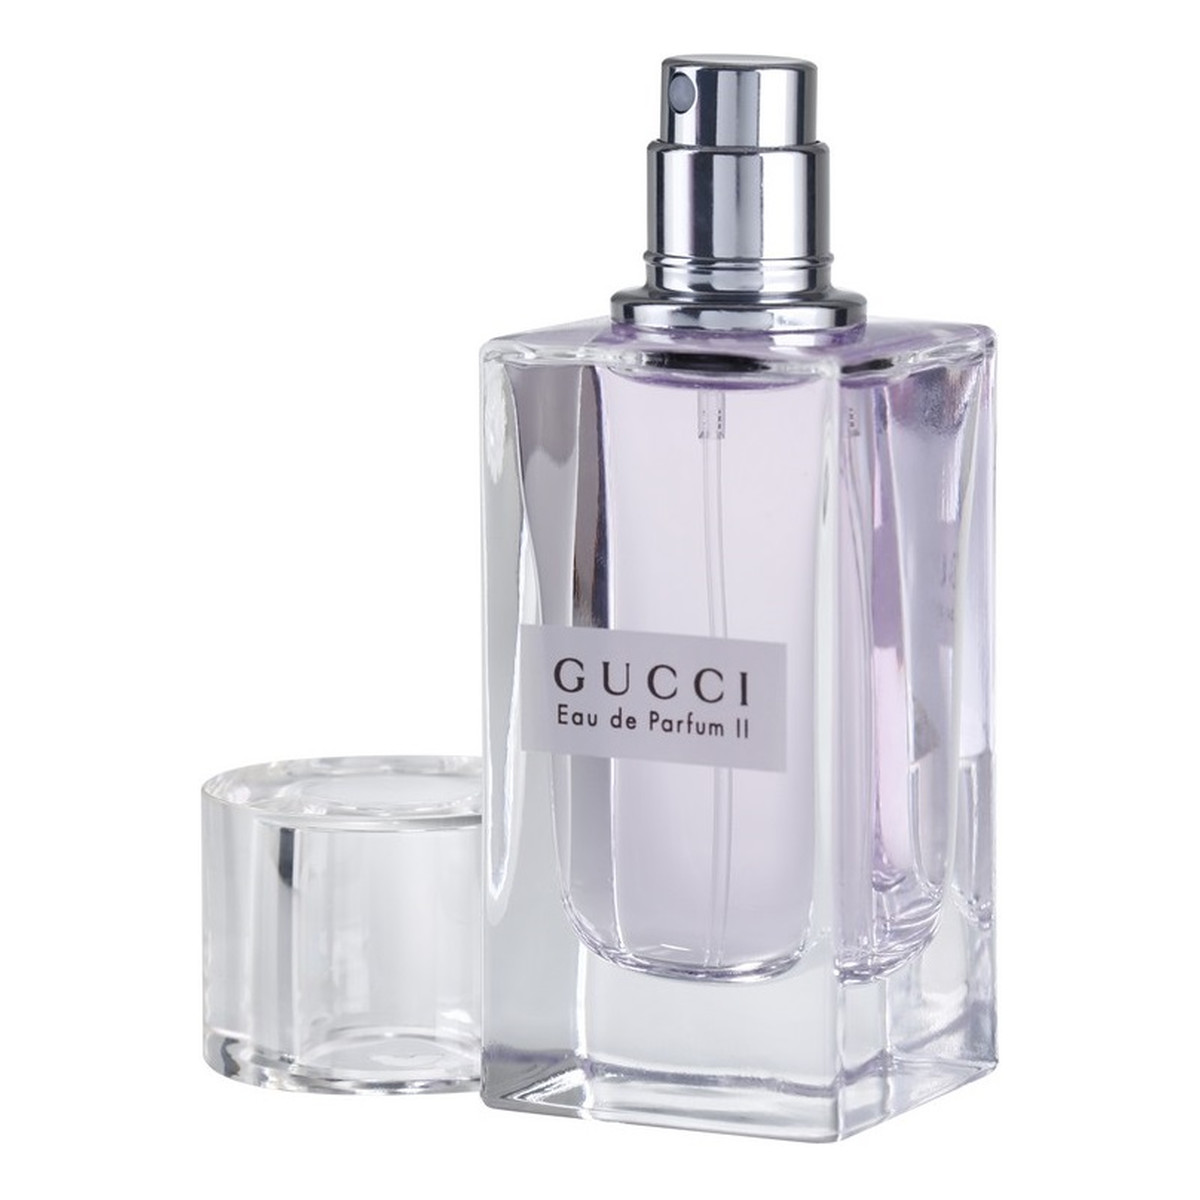 Gucci Eau de Parfum II Woda perfumowana dla kobiet 30ml